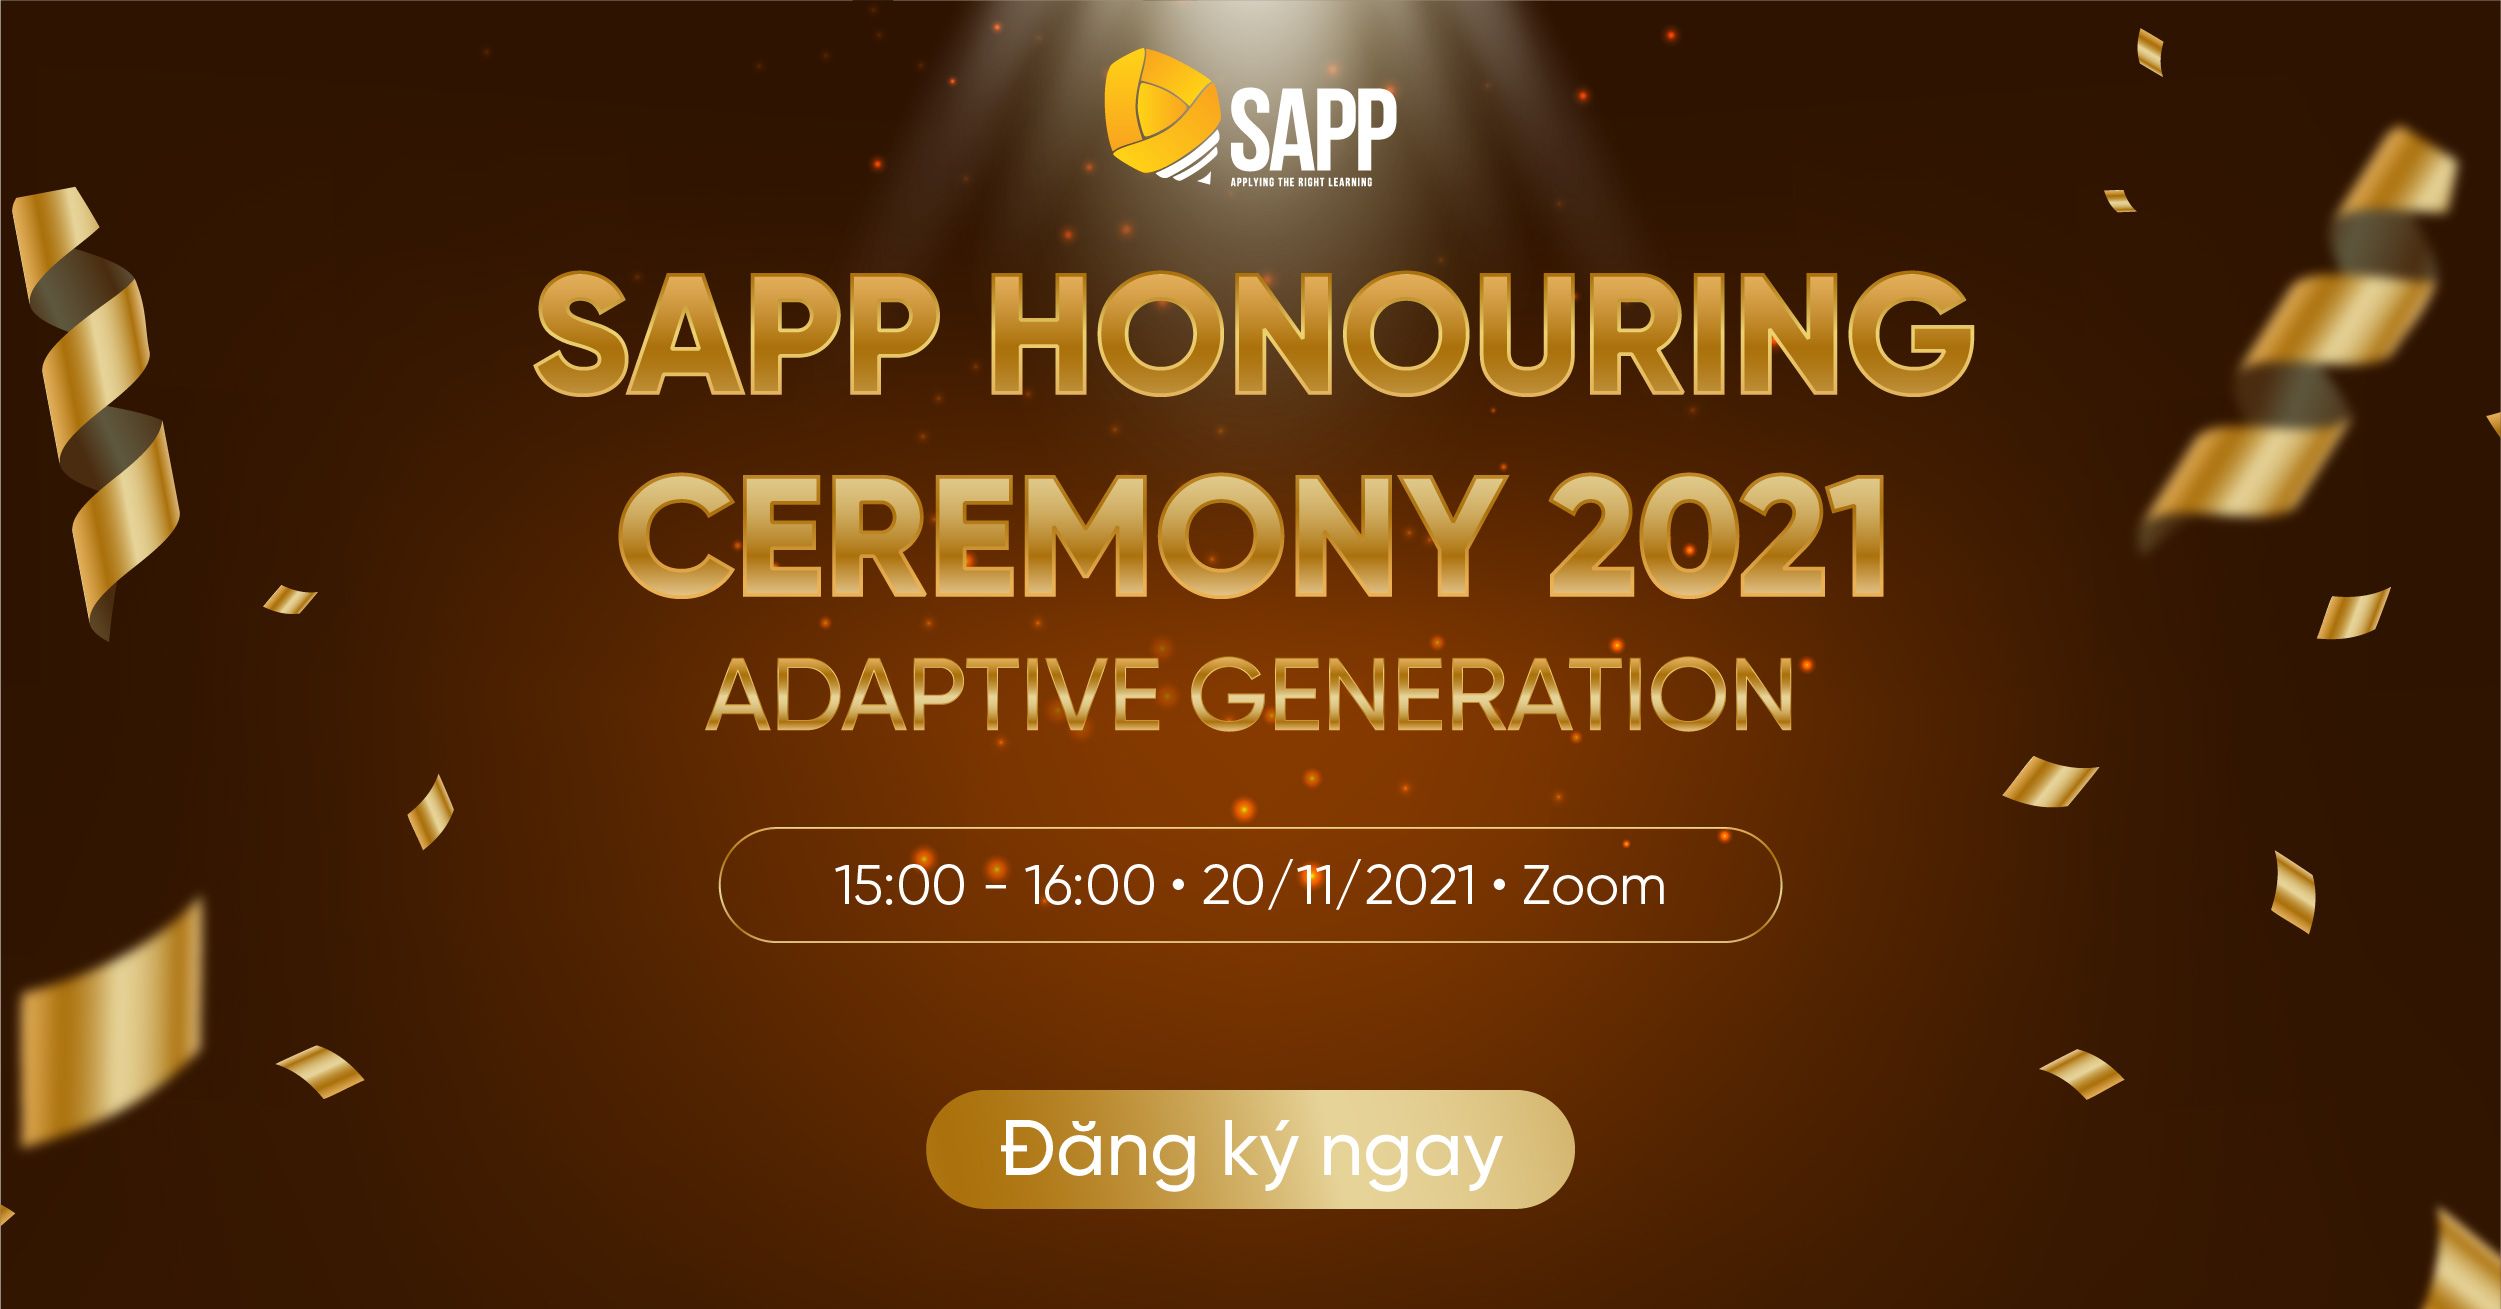 SAPP Honouring Ceremony 